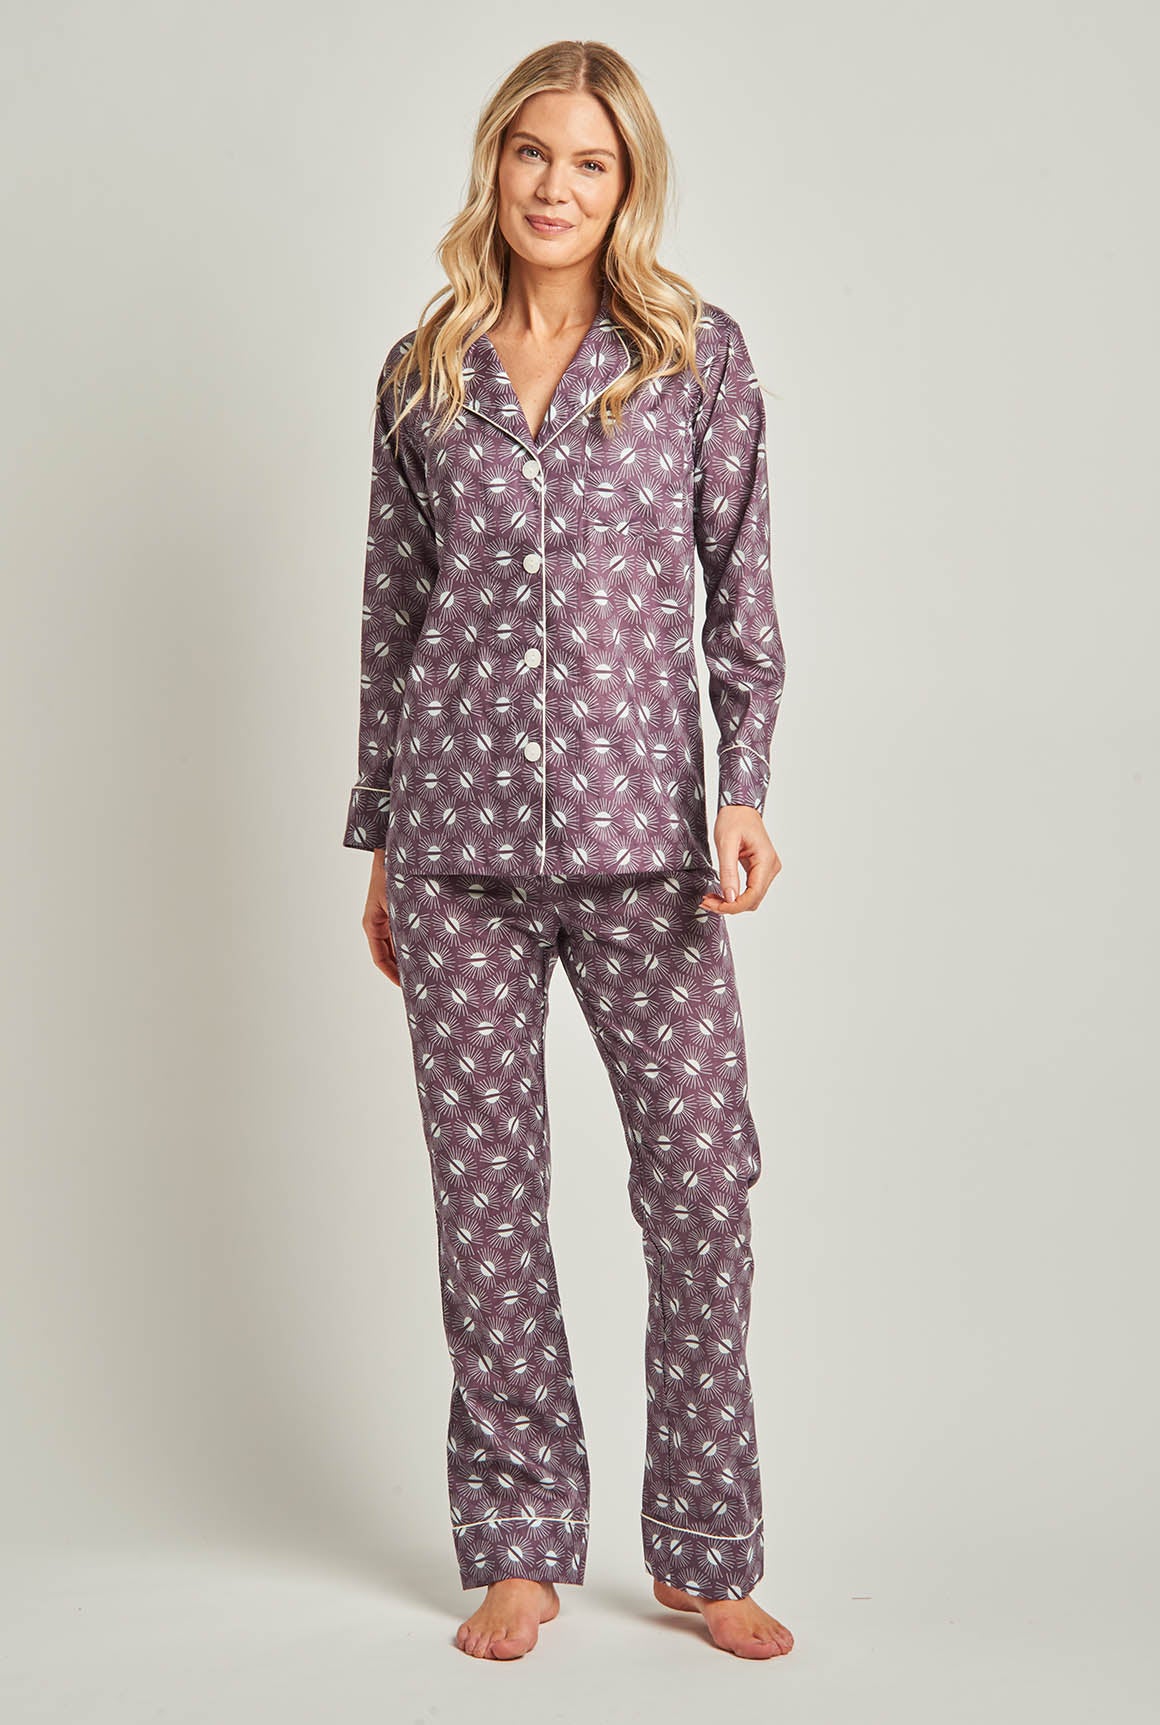 Egyptian Cotton Pajamas